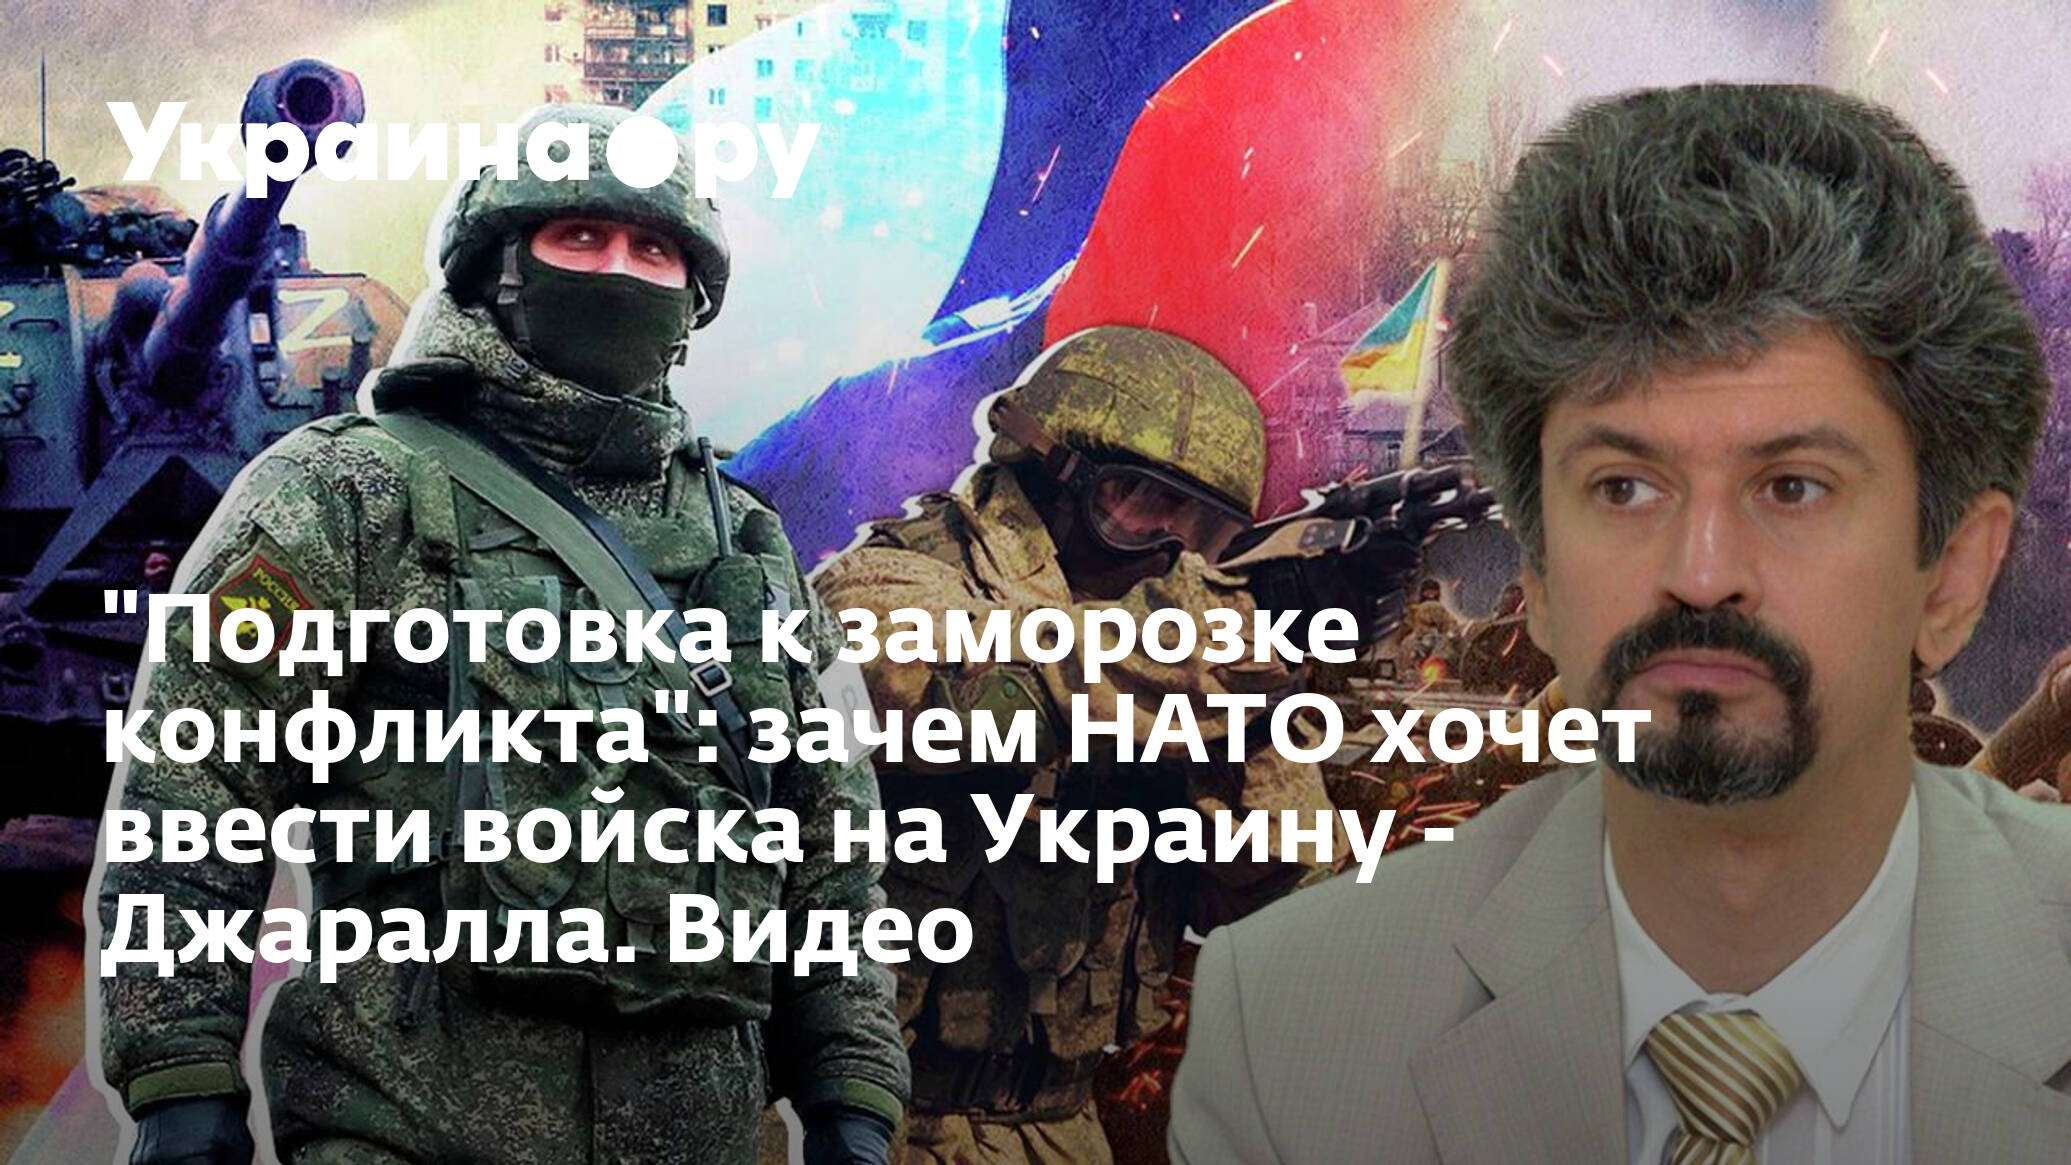 Почему в украину вводят войска. НАТО хочет ввести войска на Украину. Сво России на Украине.